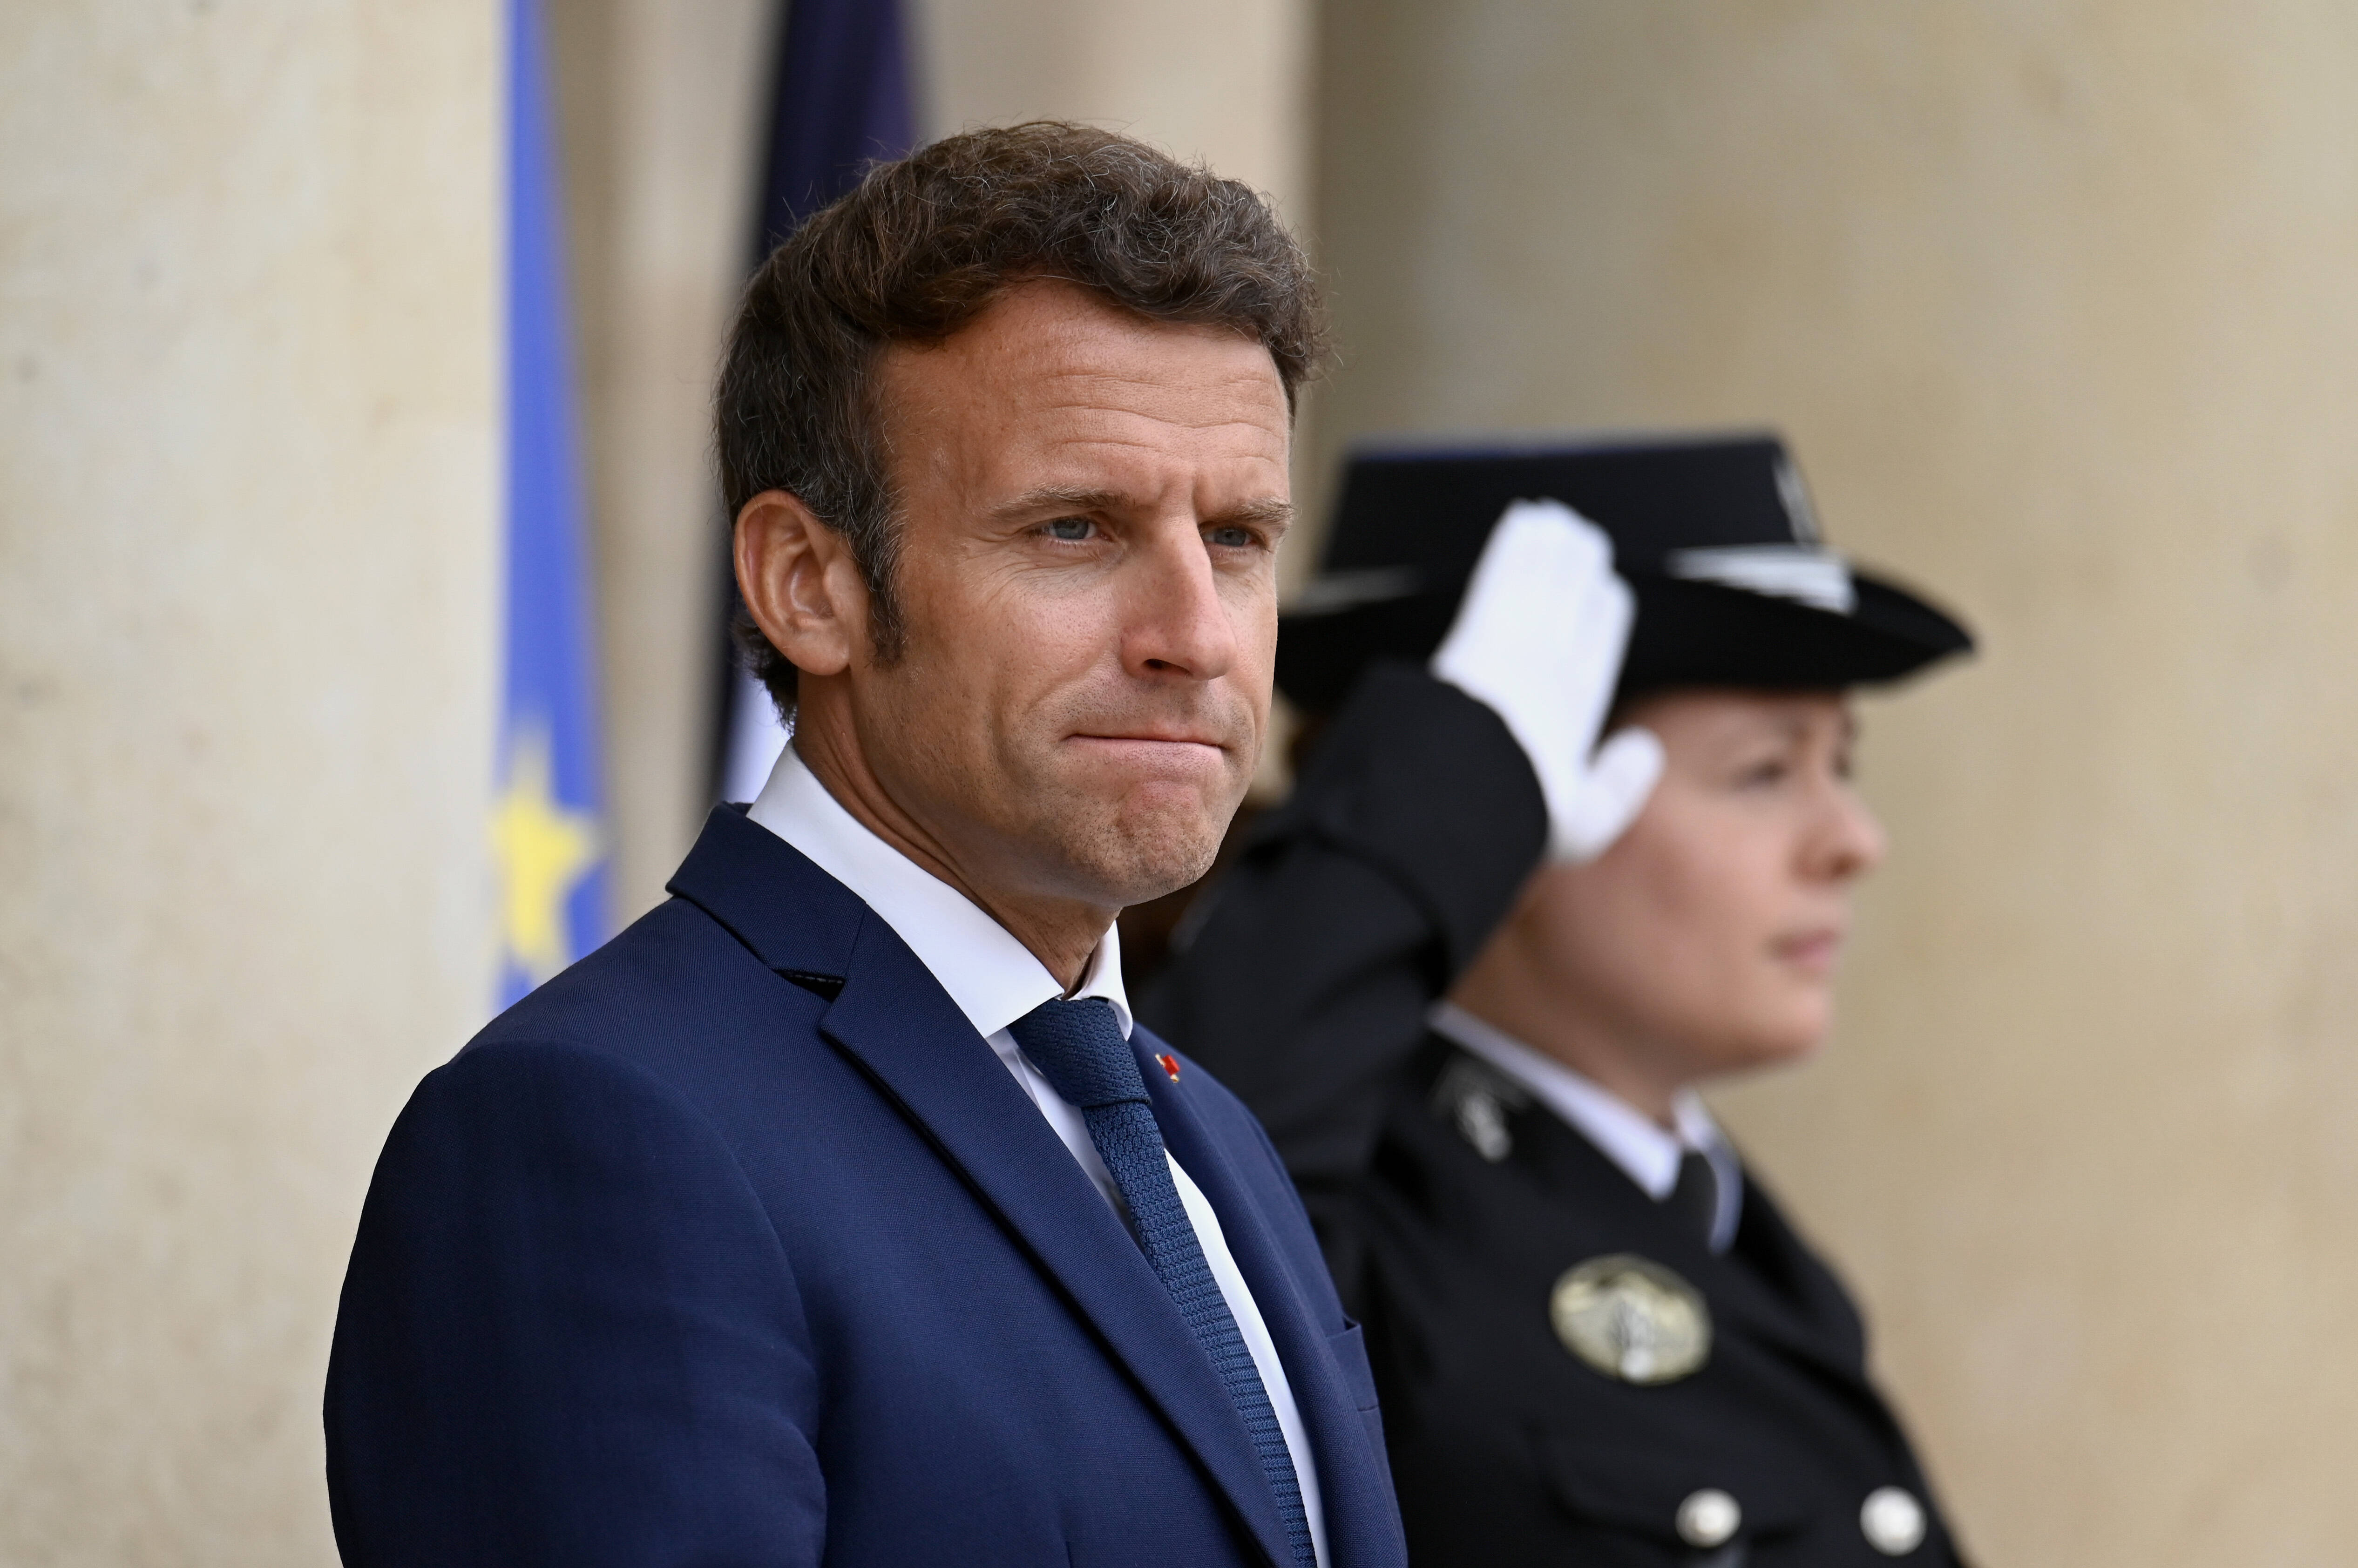 Alegeri legislative în Franța. Partidul lui Macron a pierdut majoritatea absolută. Ce va urma în Hexagon